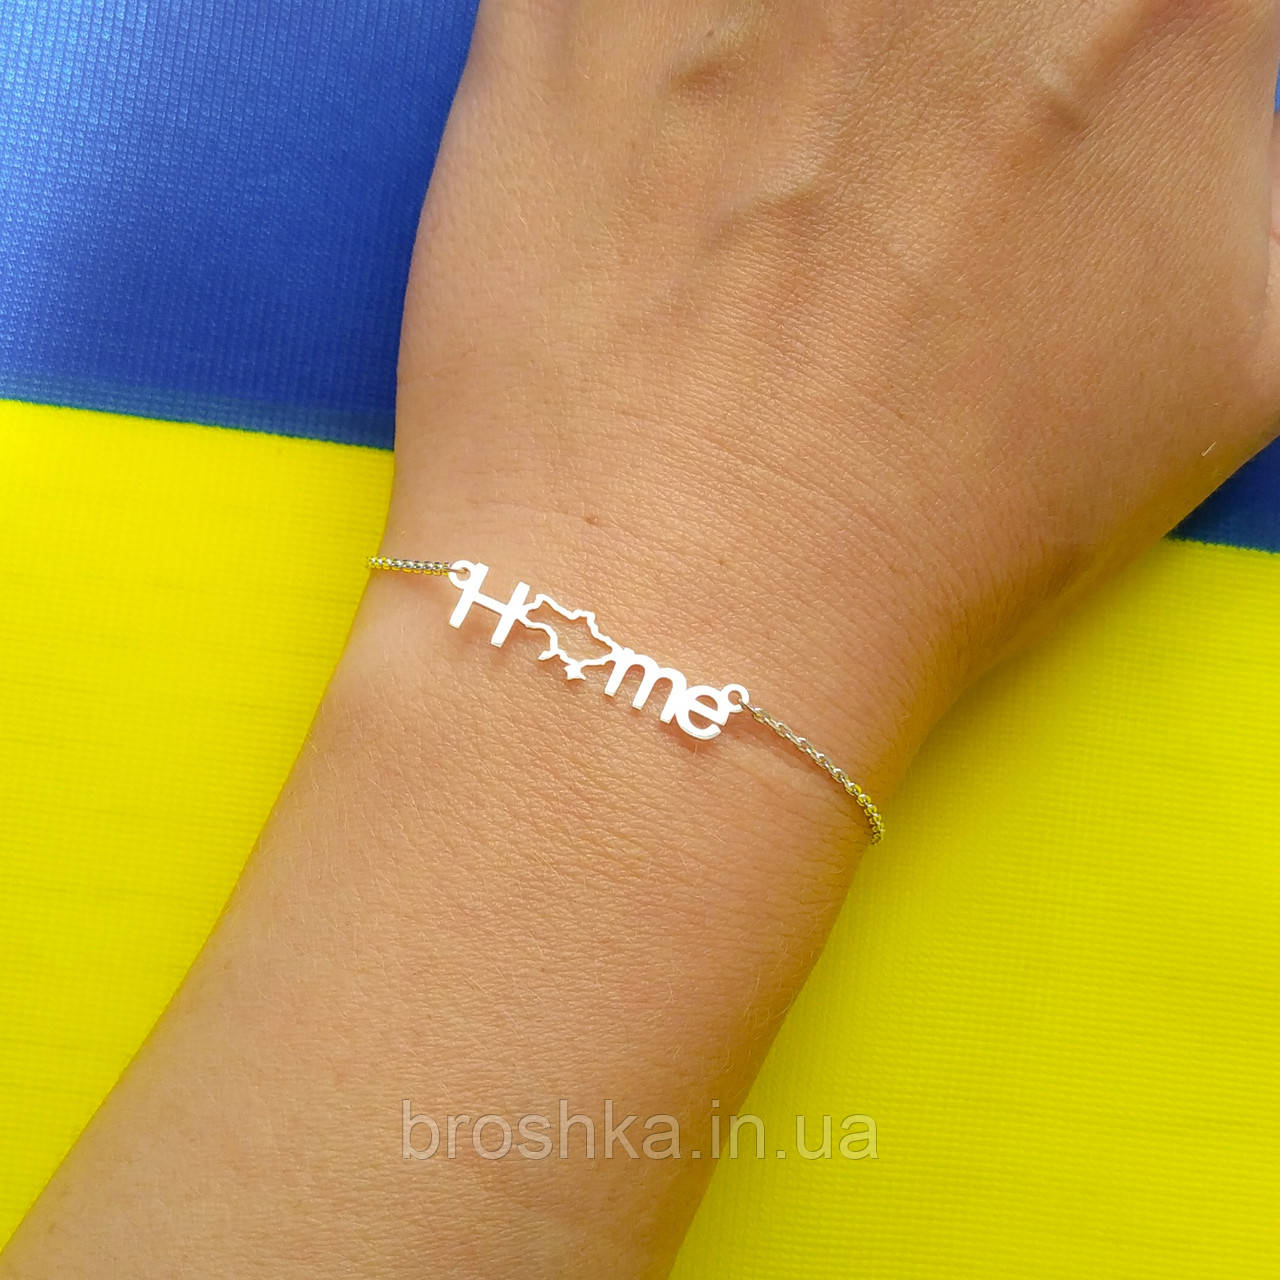 Срібний браслет Україна, браслет HOME, браслет дім Україна, патріотична символіка